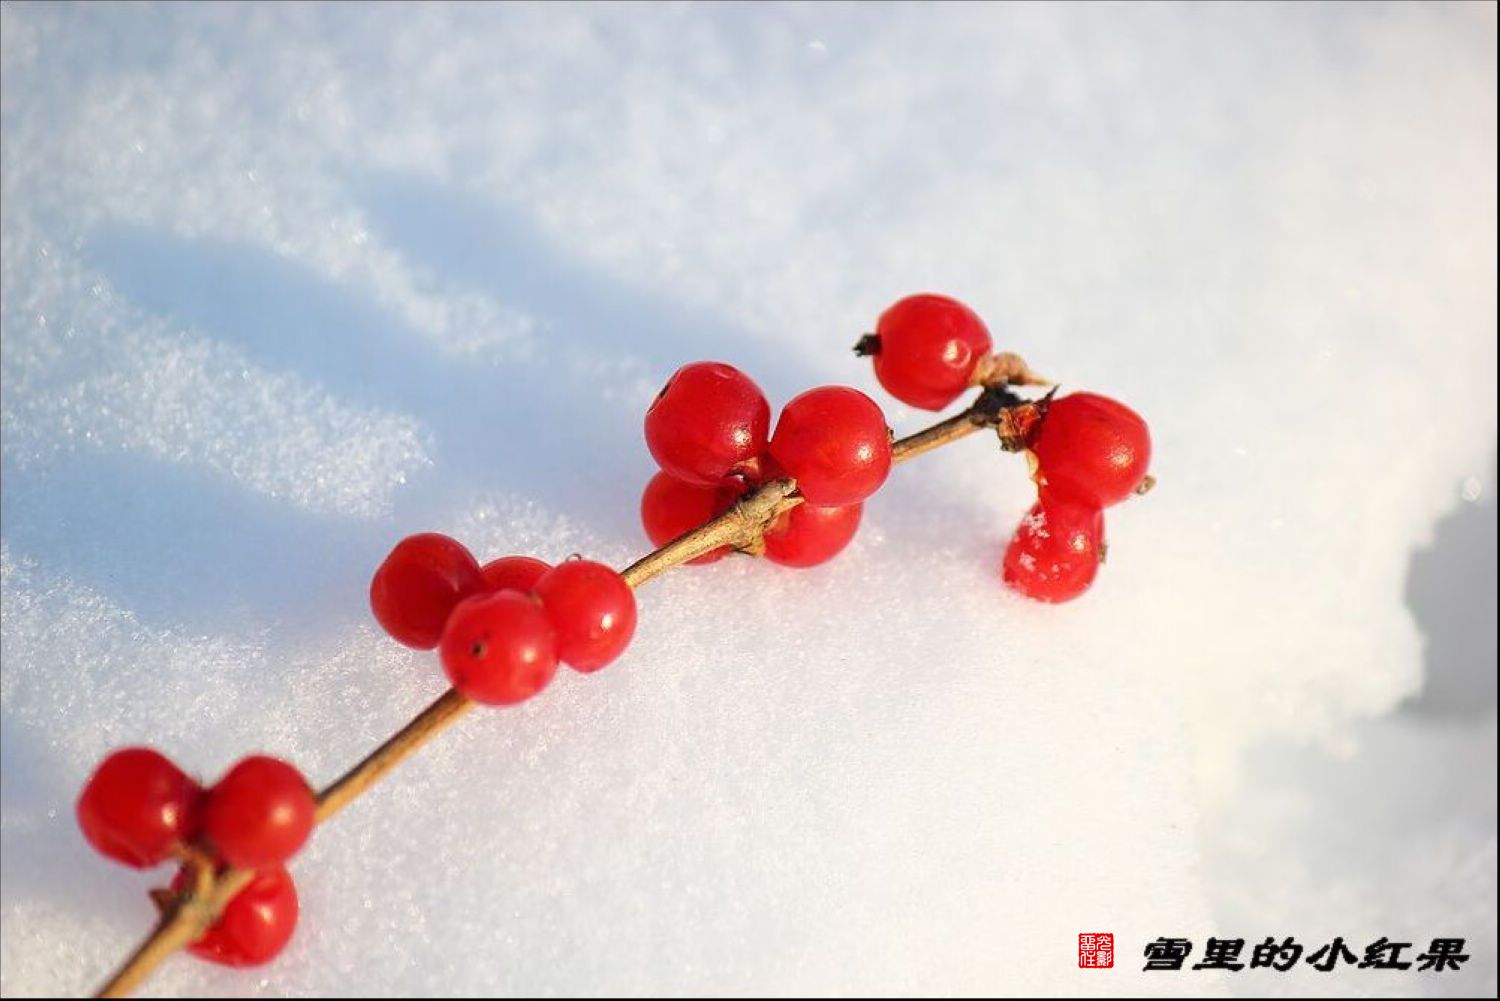 雪里的小红果-中国摄影在线-中国互联网品牌50强